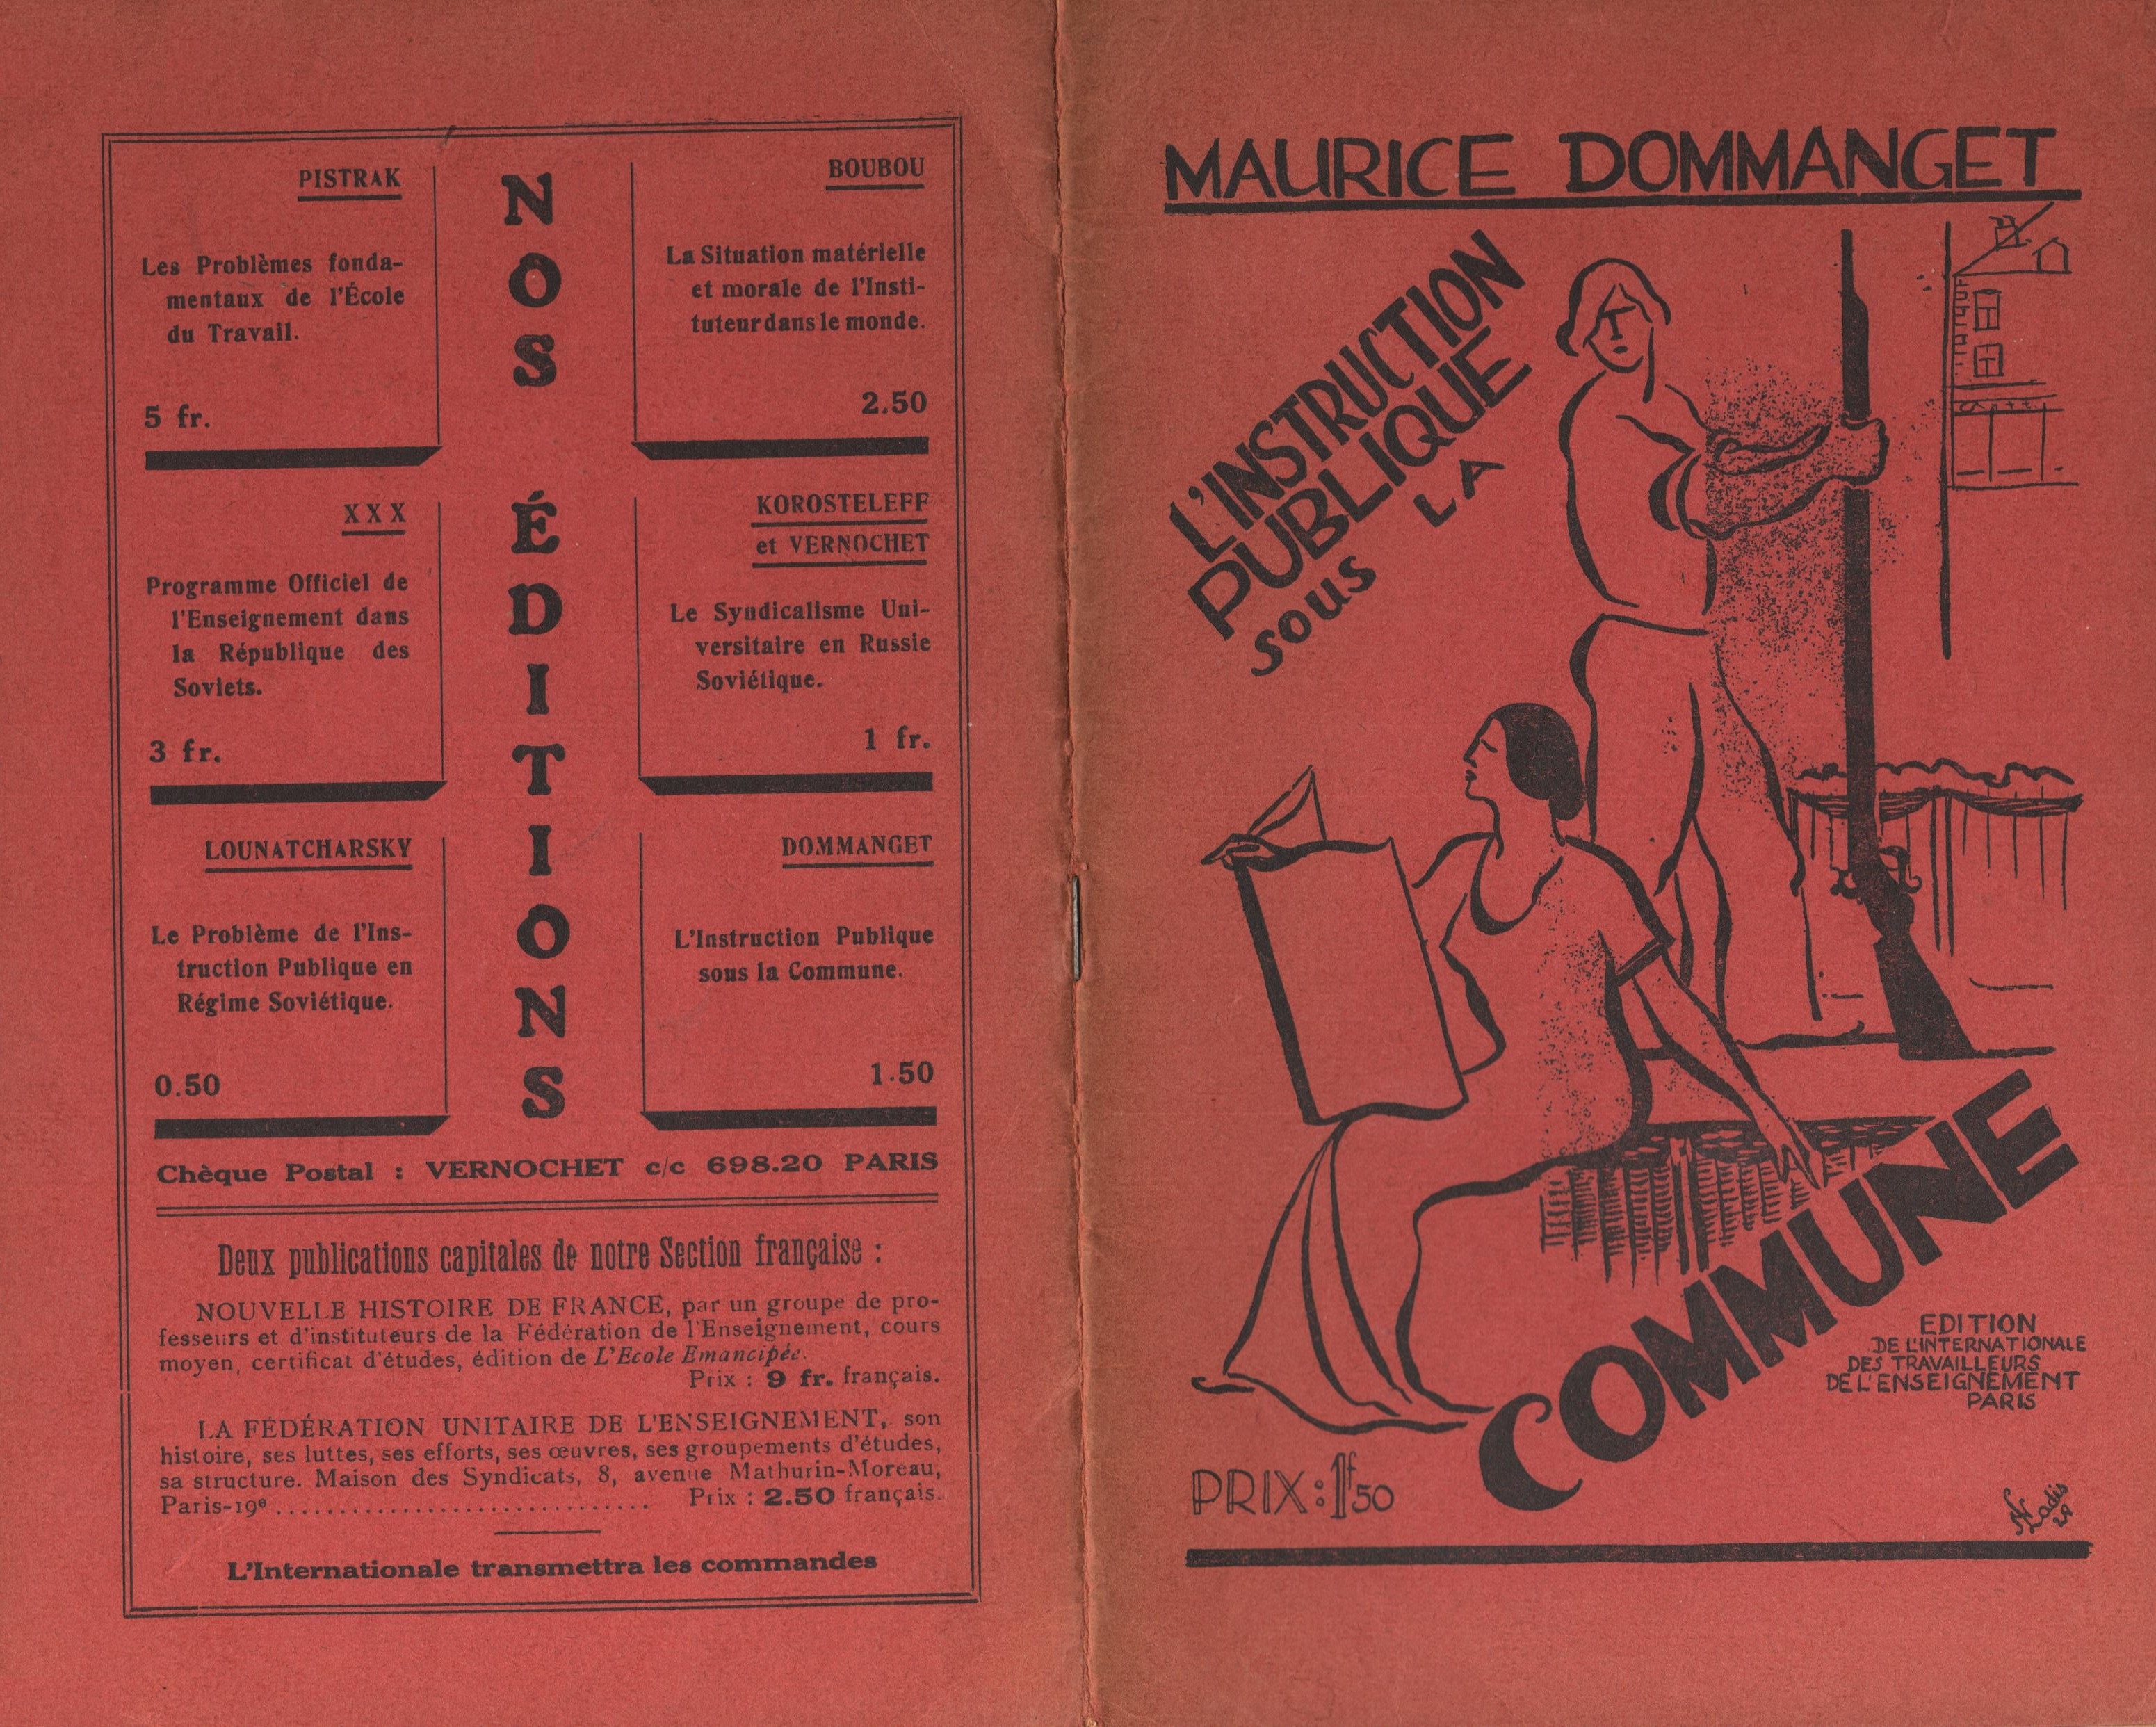 Maurice Dommanget, L'instruction publique sous la Commune - pag. 01